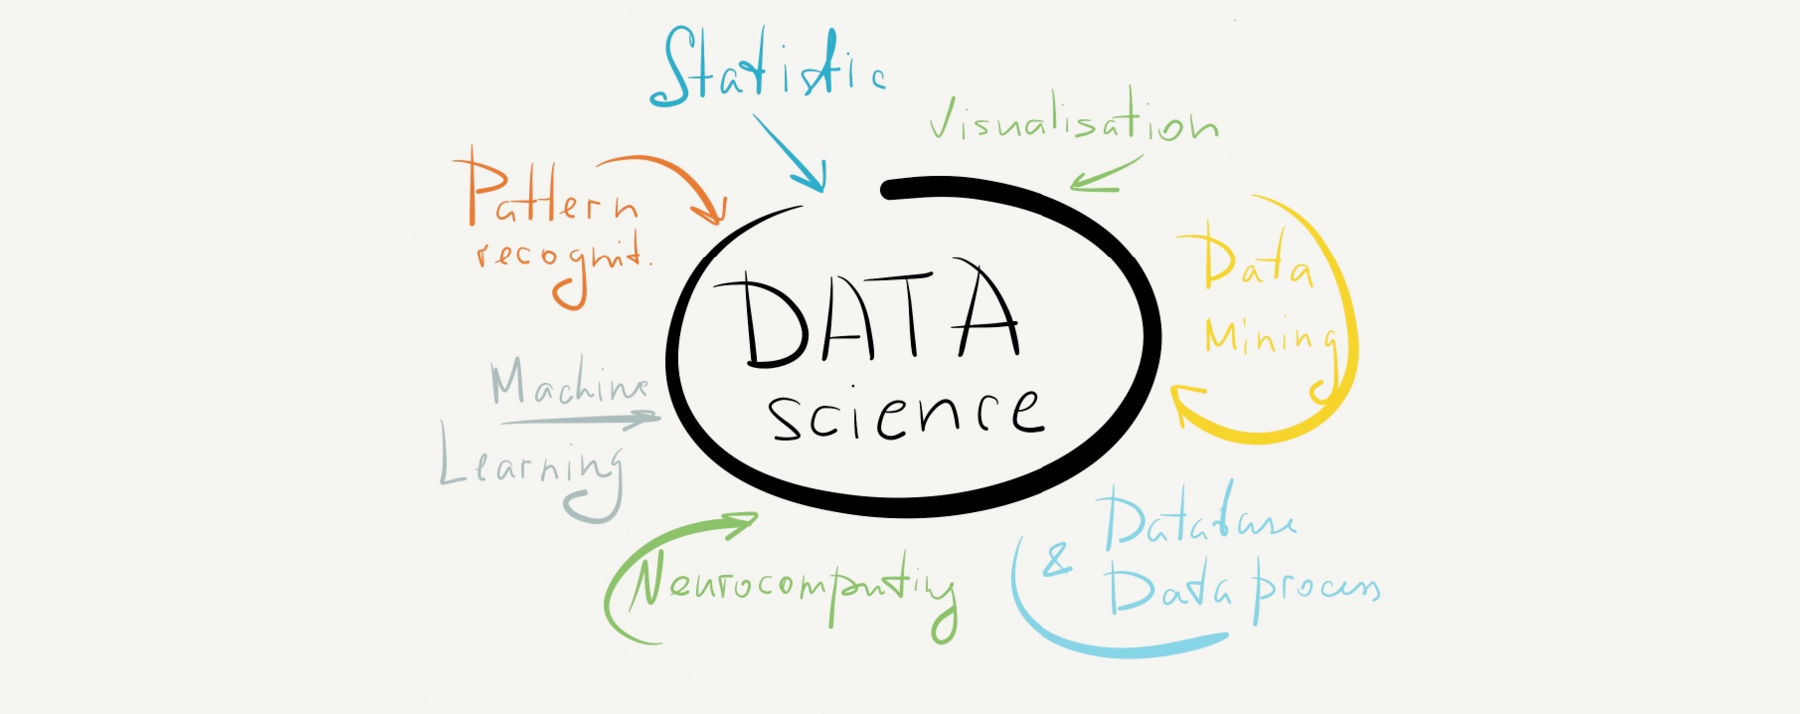 Introdução à Ciência de Dados